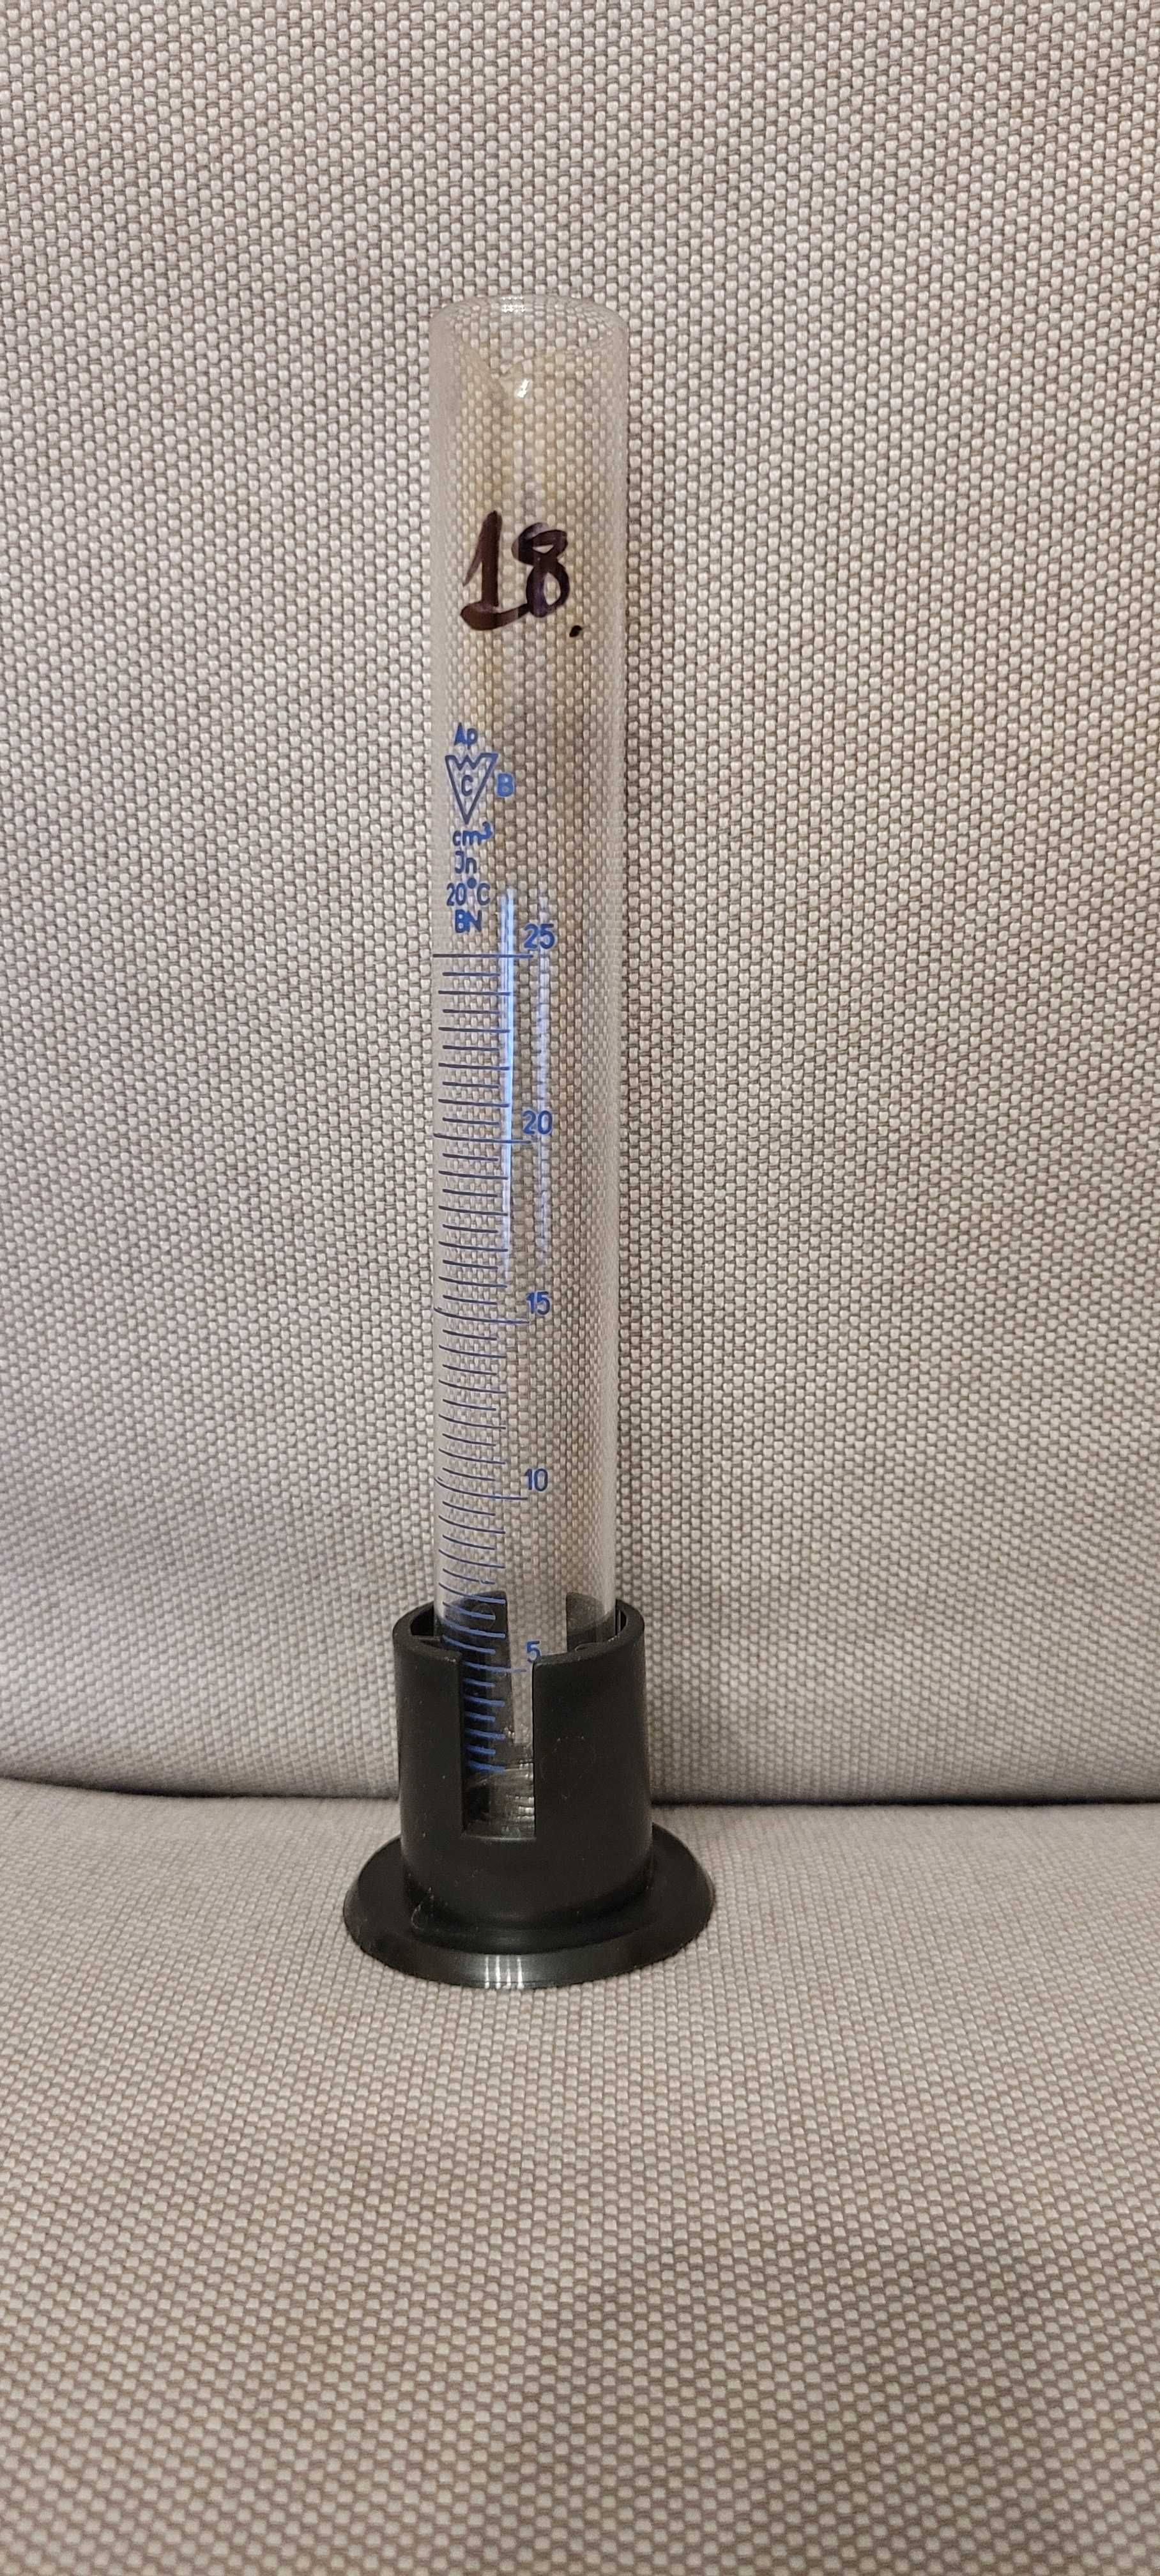 Cylinder miarowy nr 18, pojemność 25 ml / szkło laboratoryjne